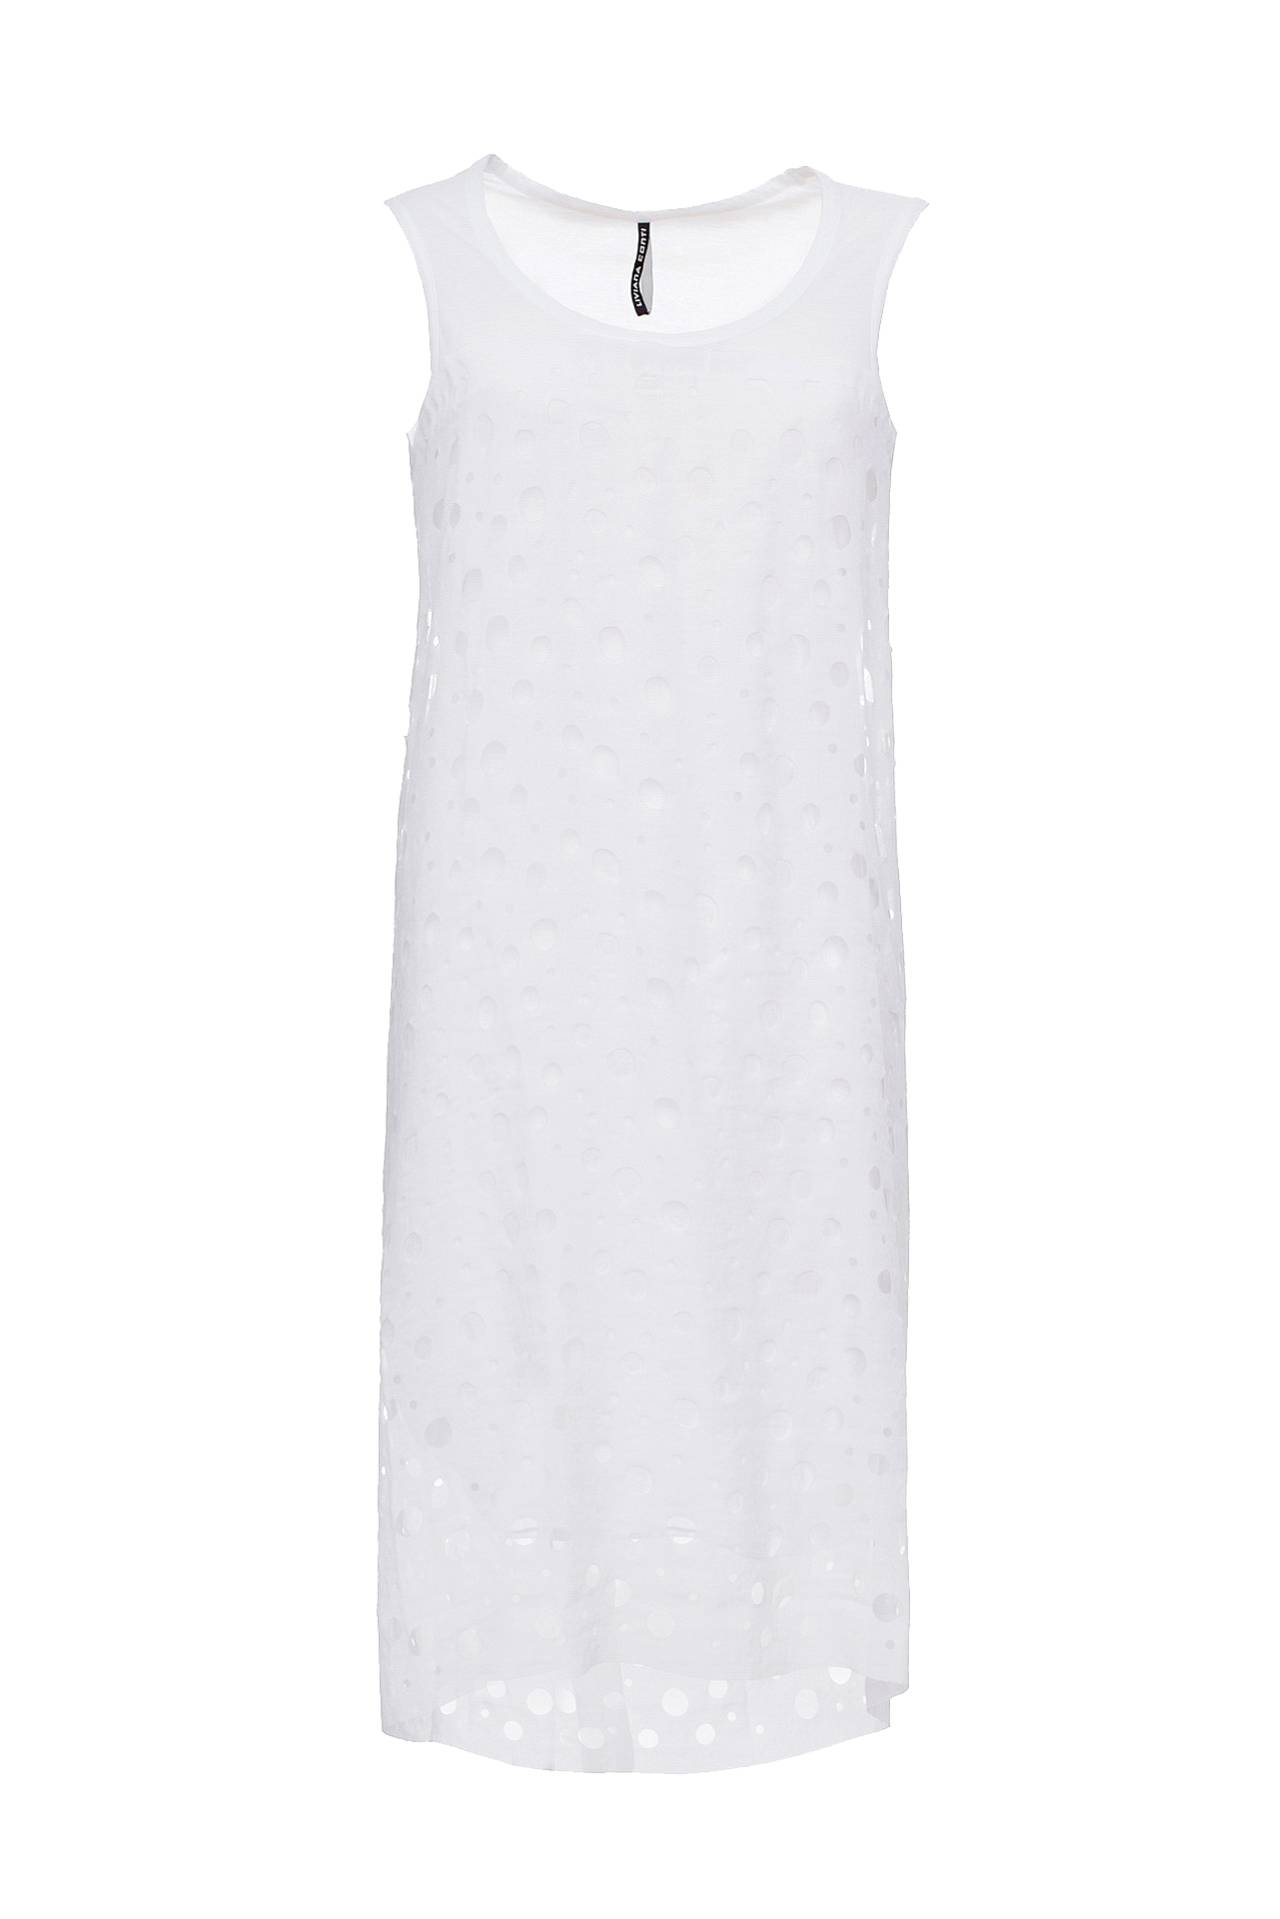 Одежда женская Платье LIVIANA CONTI (L3EI24/13.1). Купить за 9250 руб.